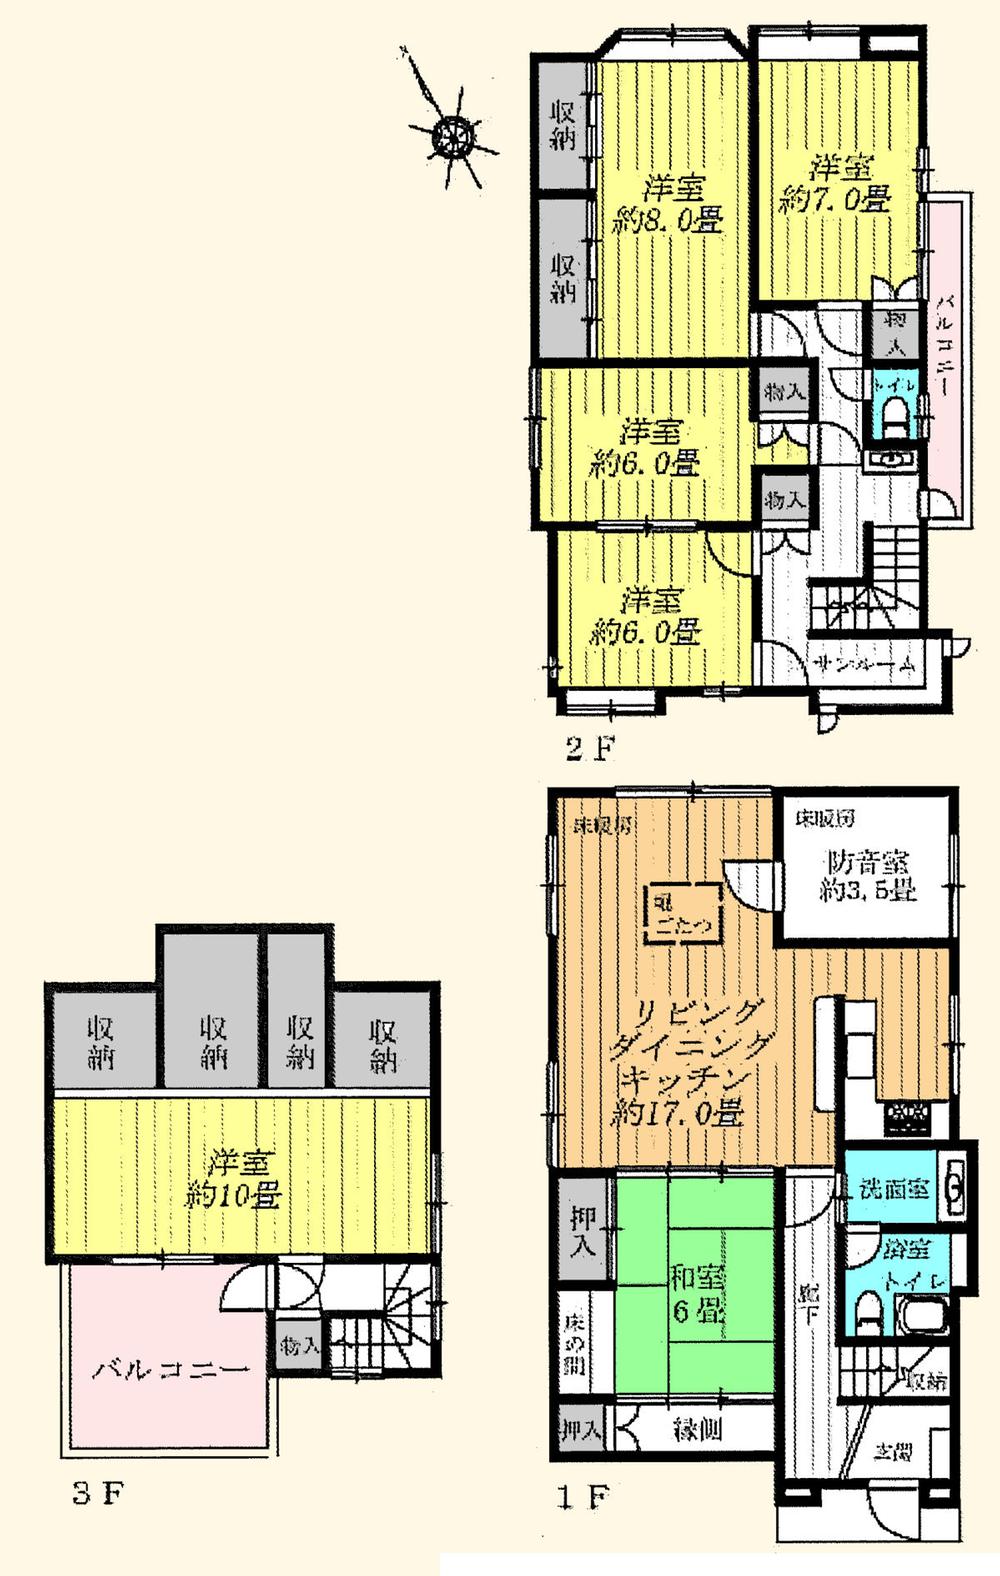 Floor plan. 36 million yen, 6LDK + S (storeroom), Land area 138.53 sq m , Building area 160.39 sq m floor plan